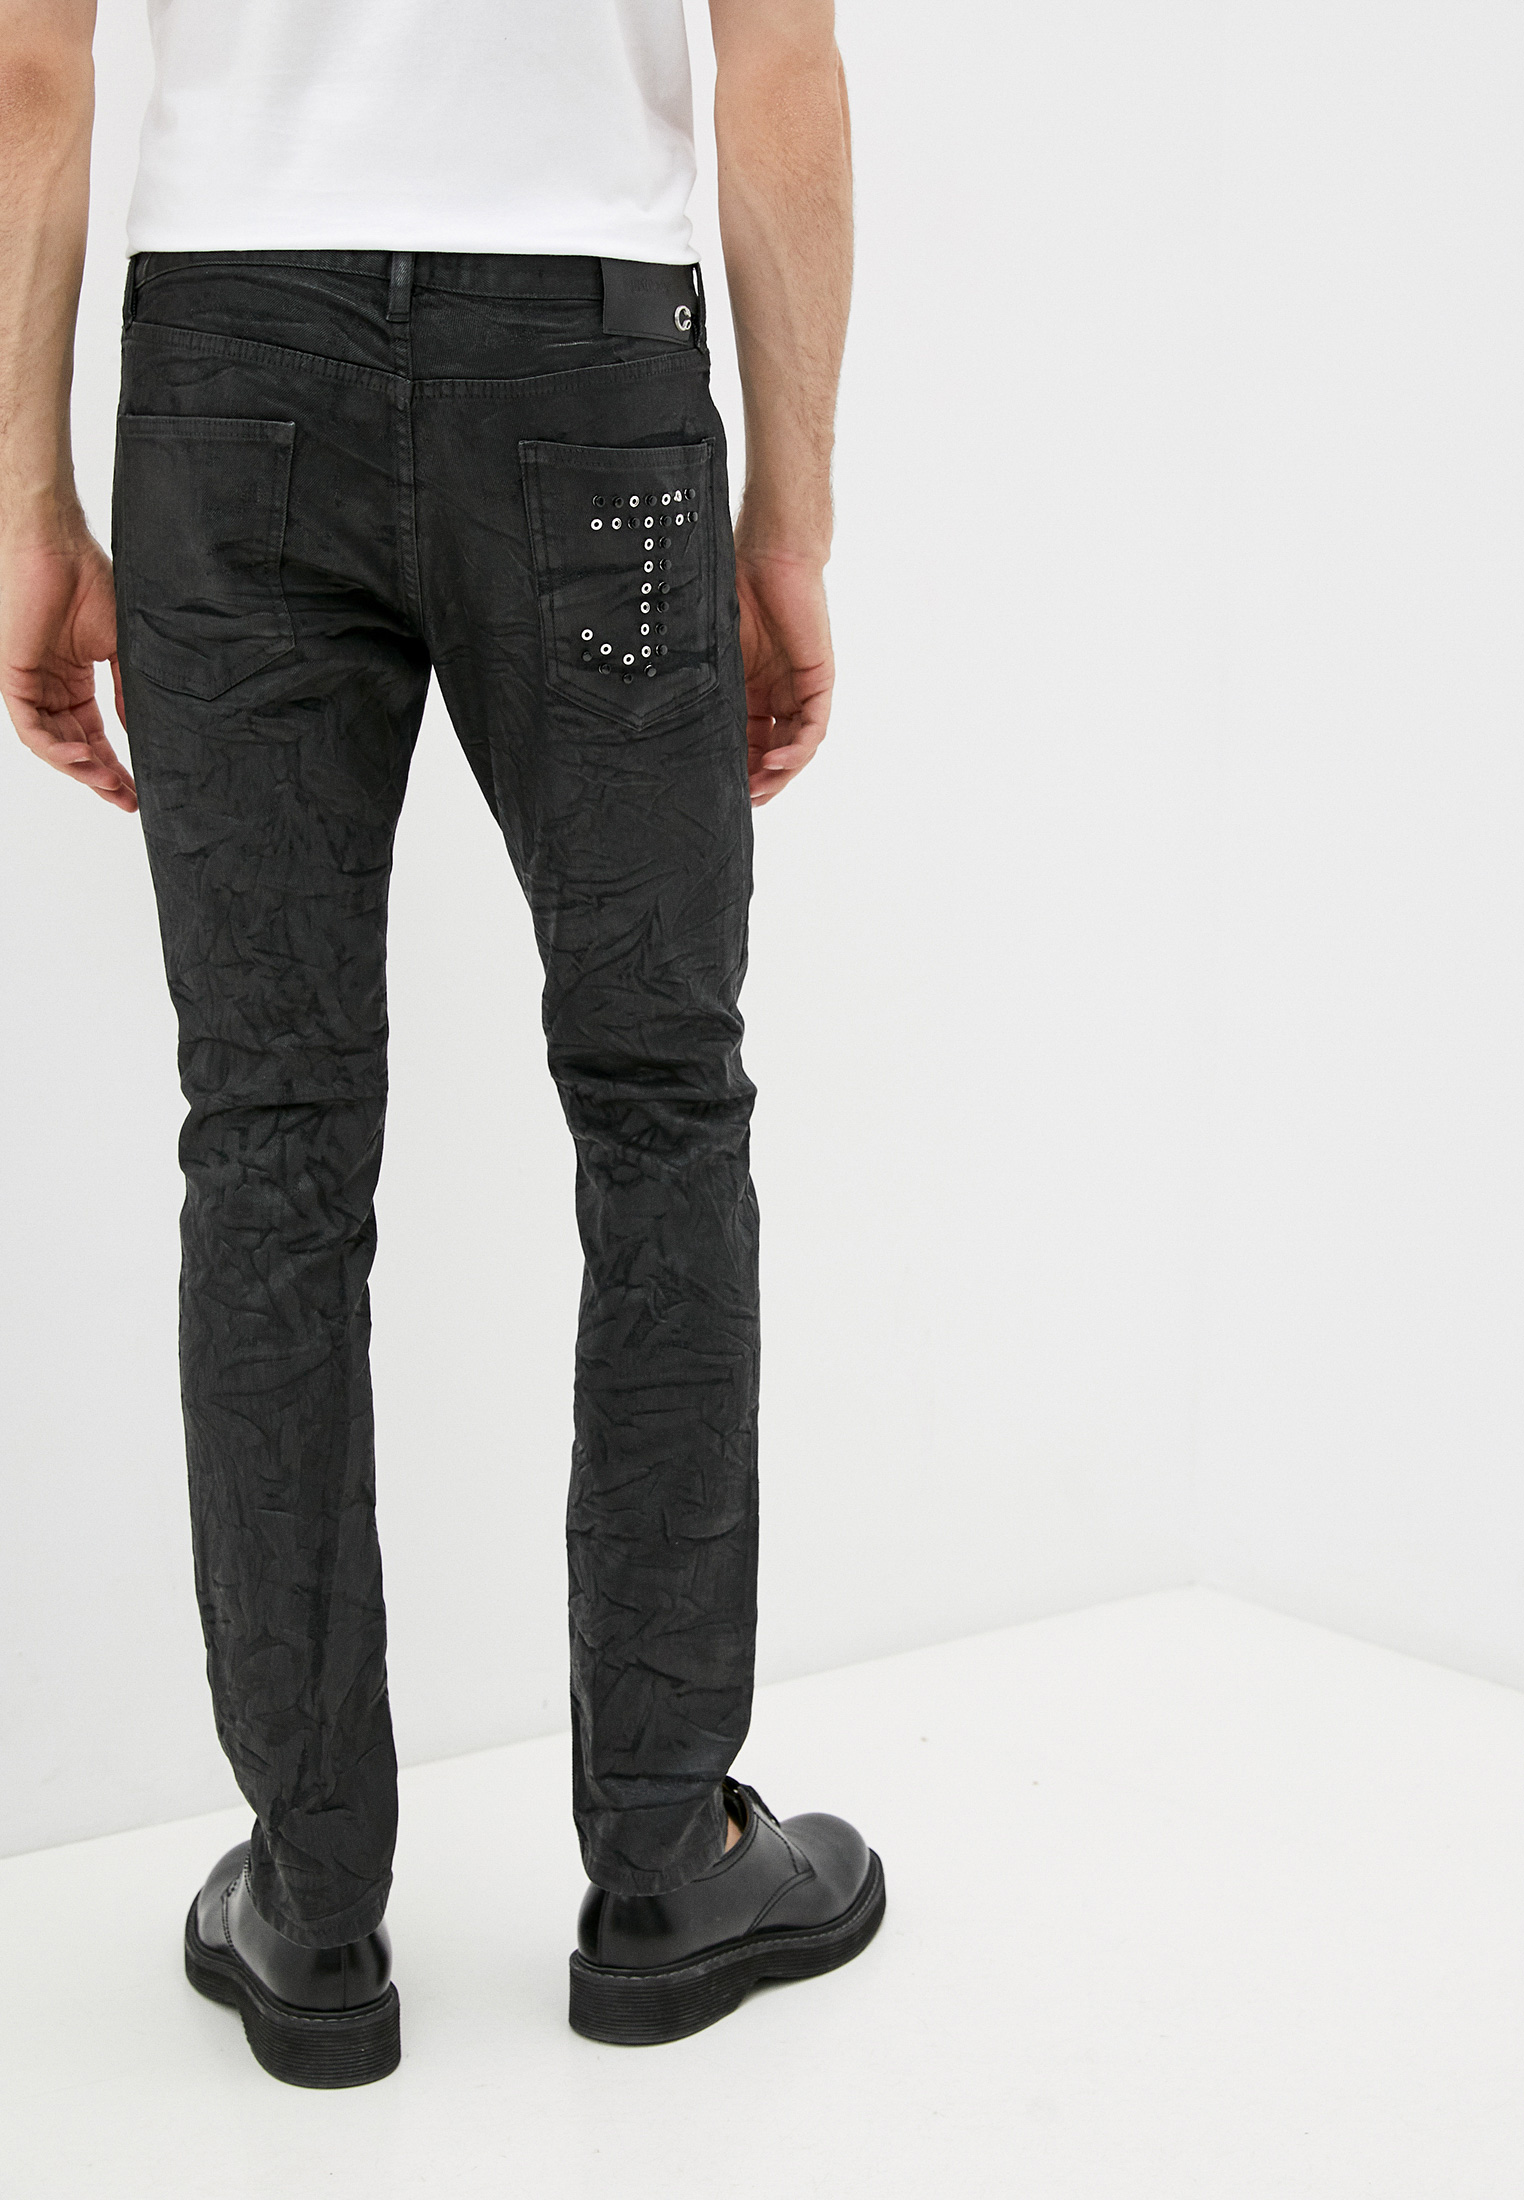 Мужские зауженные джинсы Just Cavalli (Джаст Кавалли) S03LA0089 N31691: изображение 4